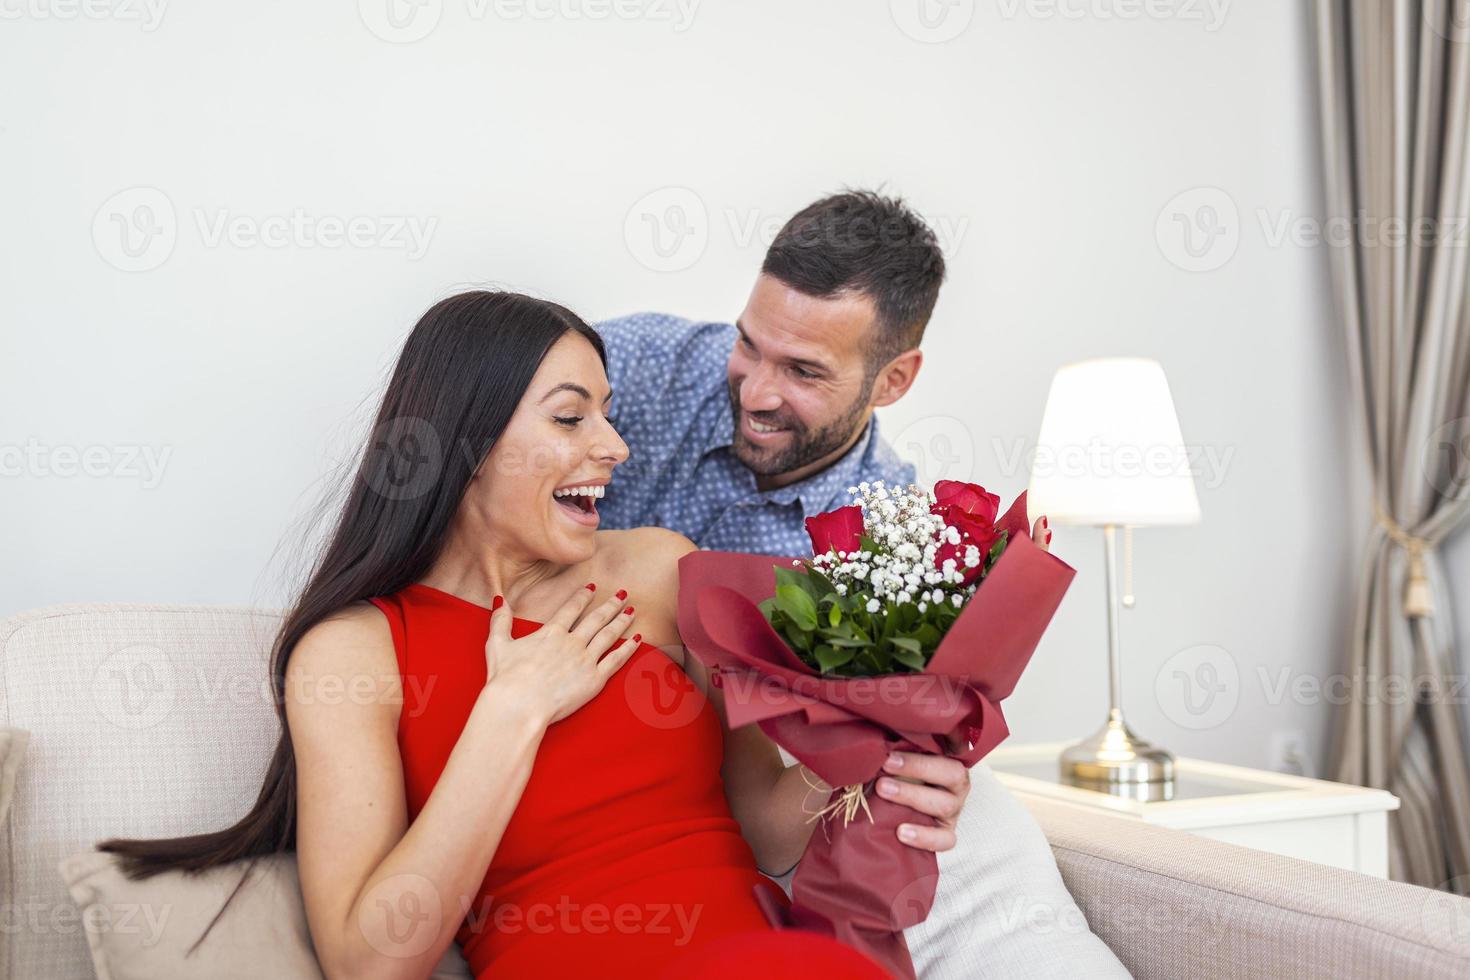 aufgeregte junge frau, die unerwarteten strauß roter rosen vom ehemann zu hause erhält, liebevoller großzügiger freund, der attraktive freundin am valentinstag romantisch überrascht foto